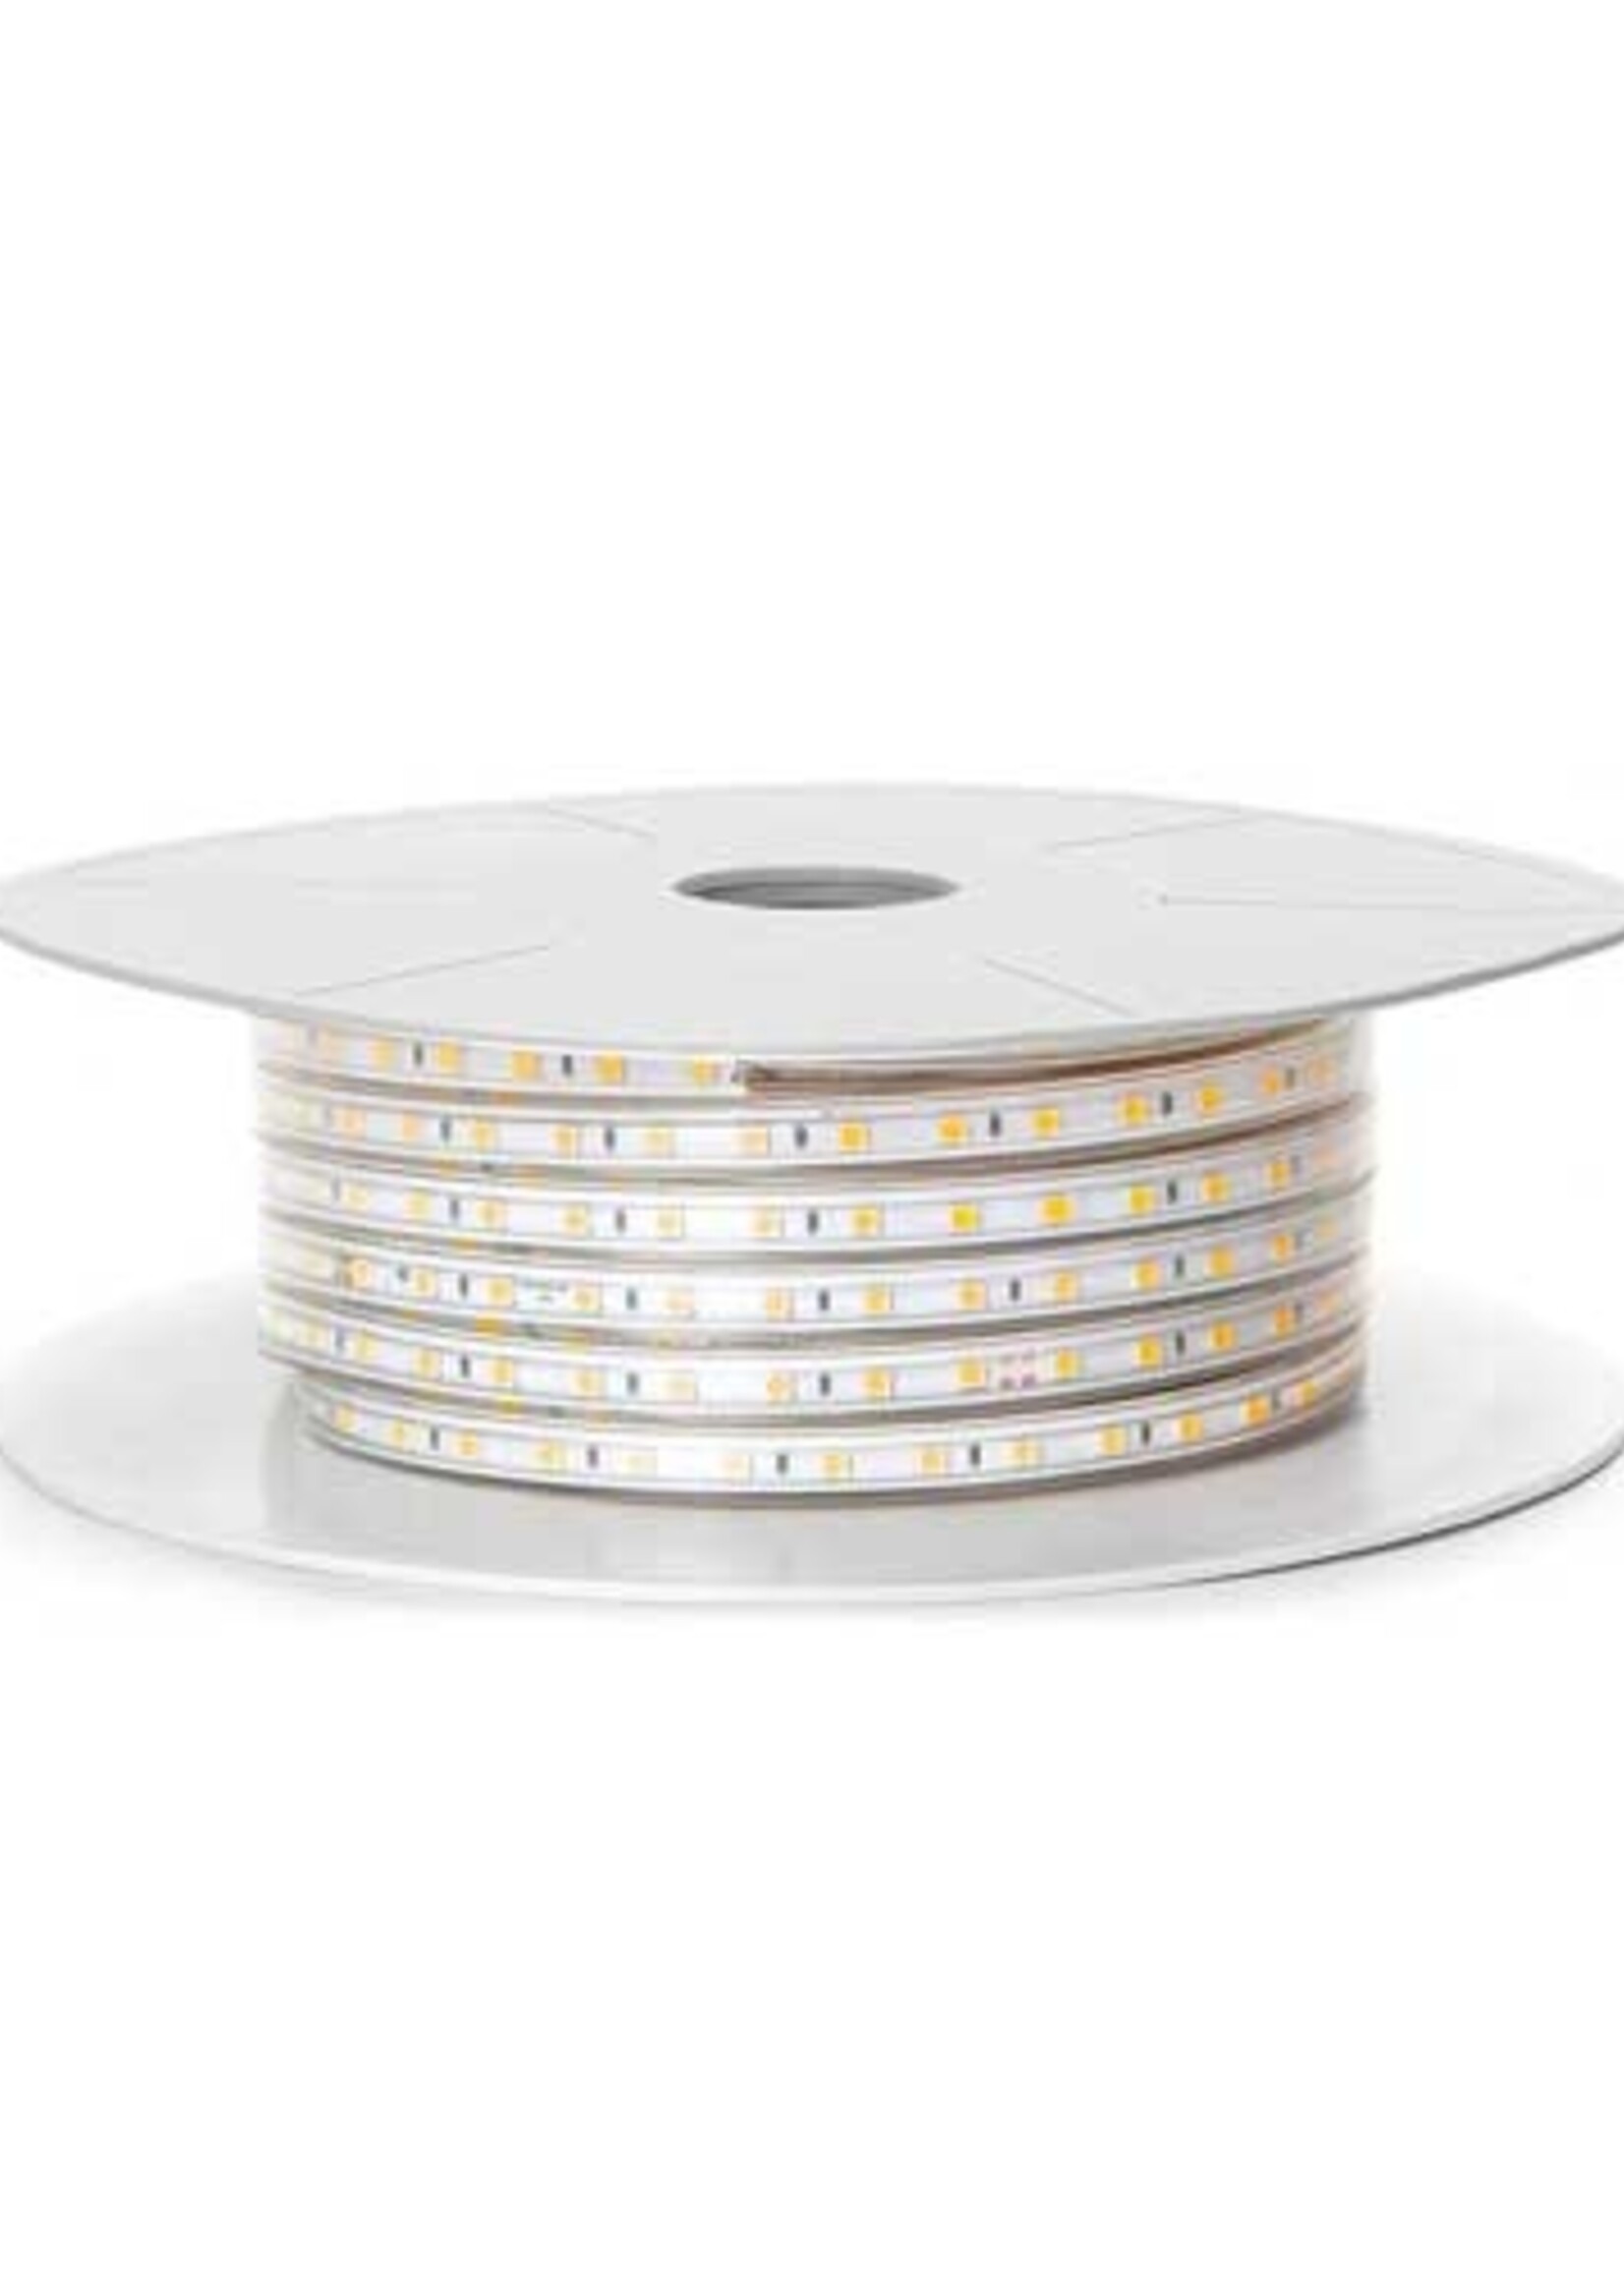 LEDWINKEL-Online LED Strip 50 meters IP65 Ultra-180 LEDS/m 220V